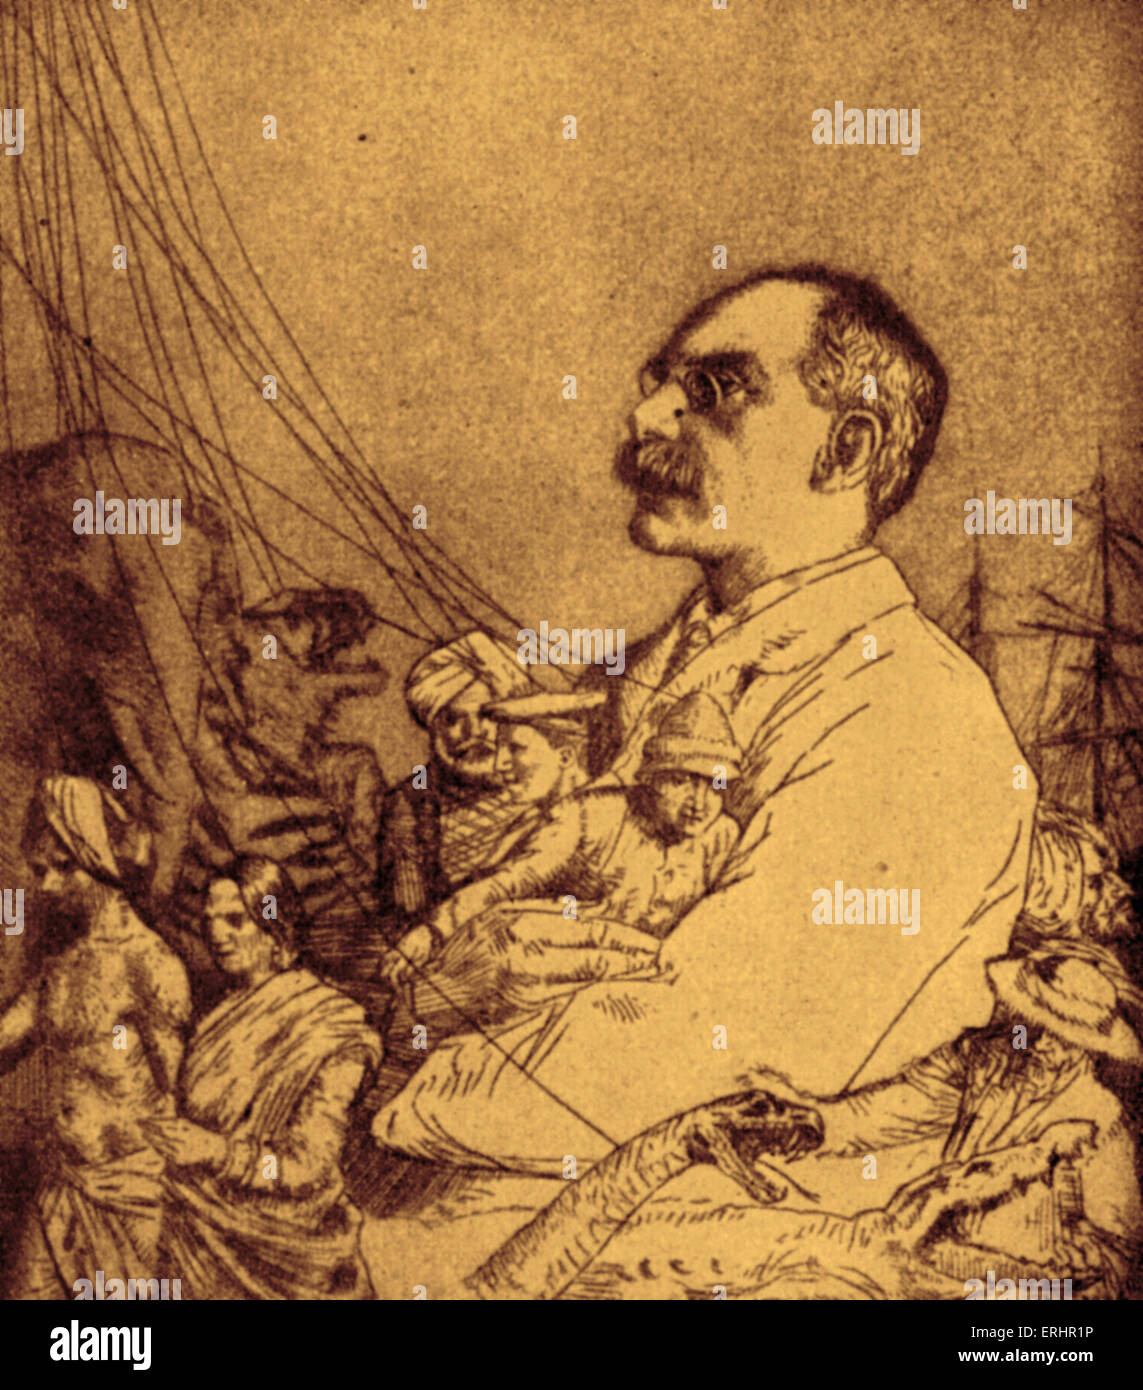 Rudyard Kipling - portrait de l'écrivain et poète anglais. 30 Décembre 1865 - 18 janvier 1936. Banque D'Images